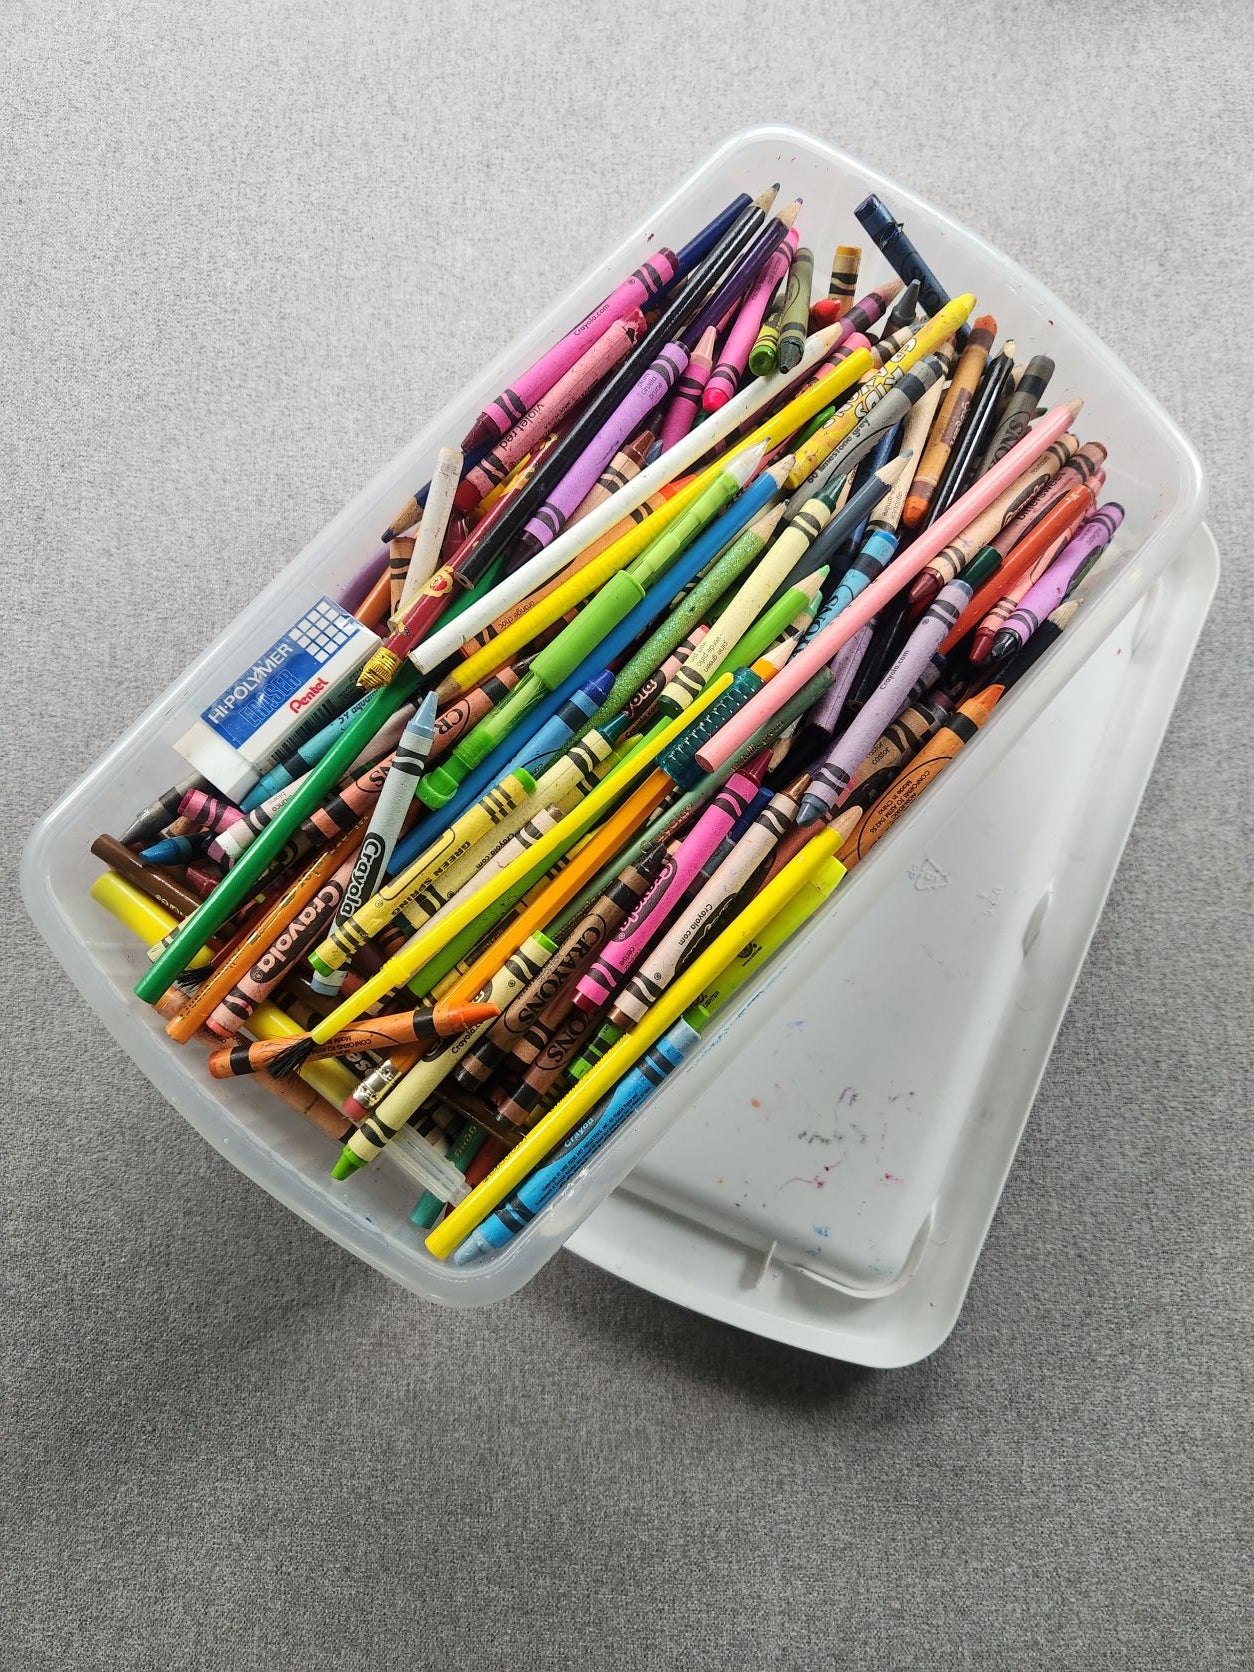 Crayon Storage Tray Crayon Holder Crayon Organizer Holder Wooden Crayon Box  Crayon Pen Holder 